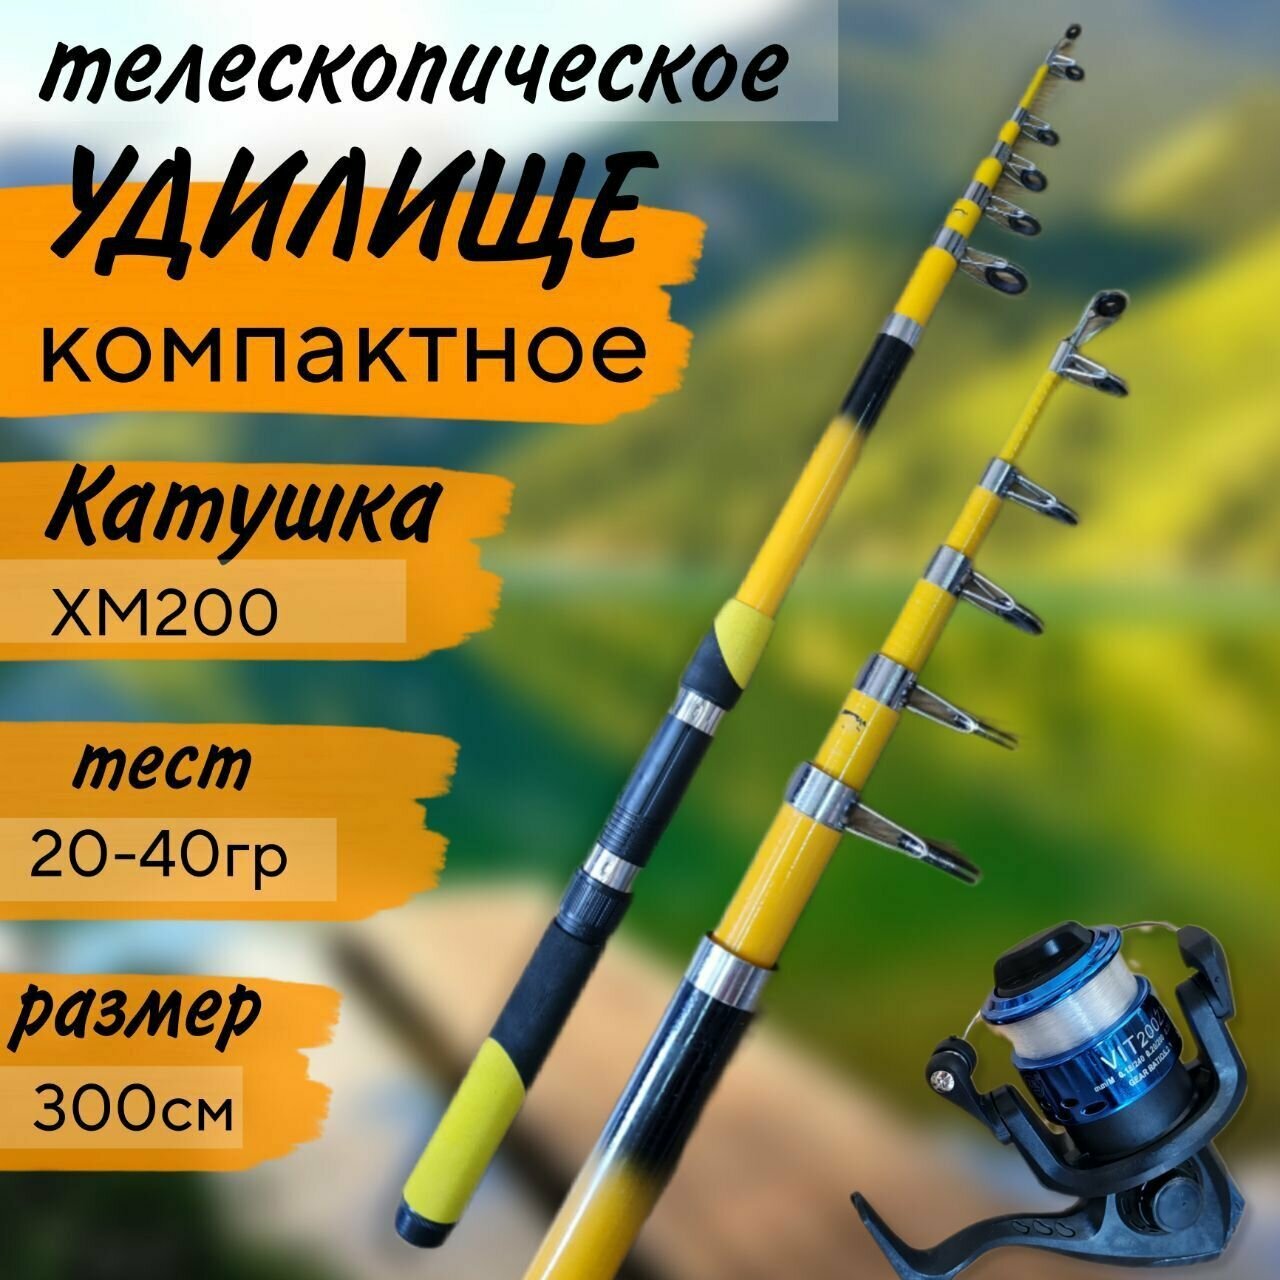 Спиннинг телескопический для летней рыбалки 3 м с катушкой тест 20-40гр